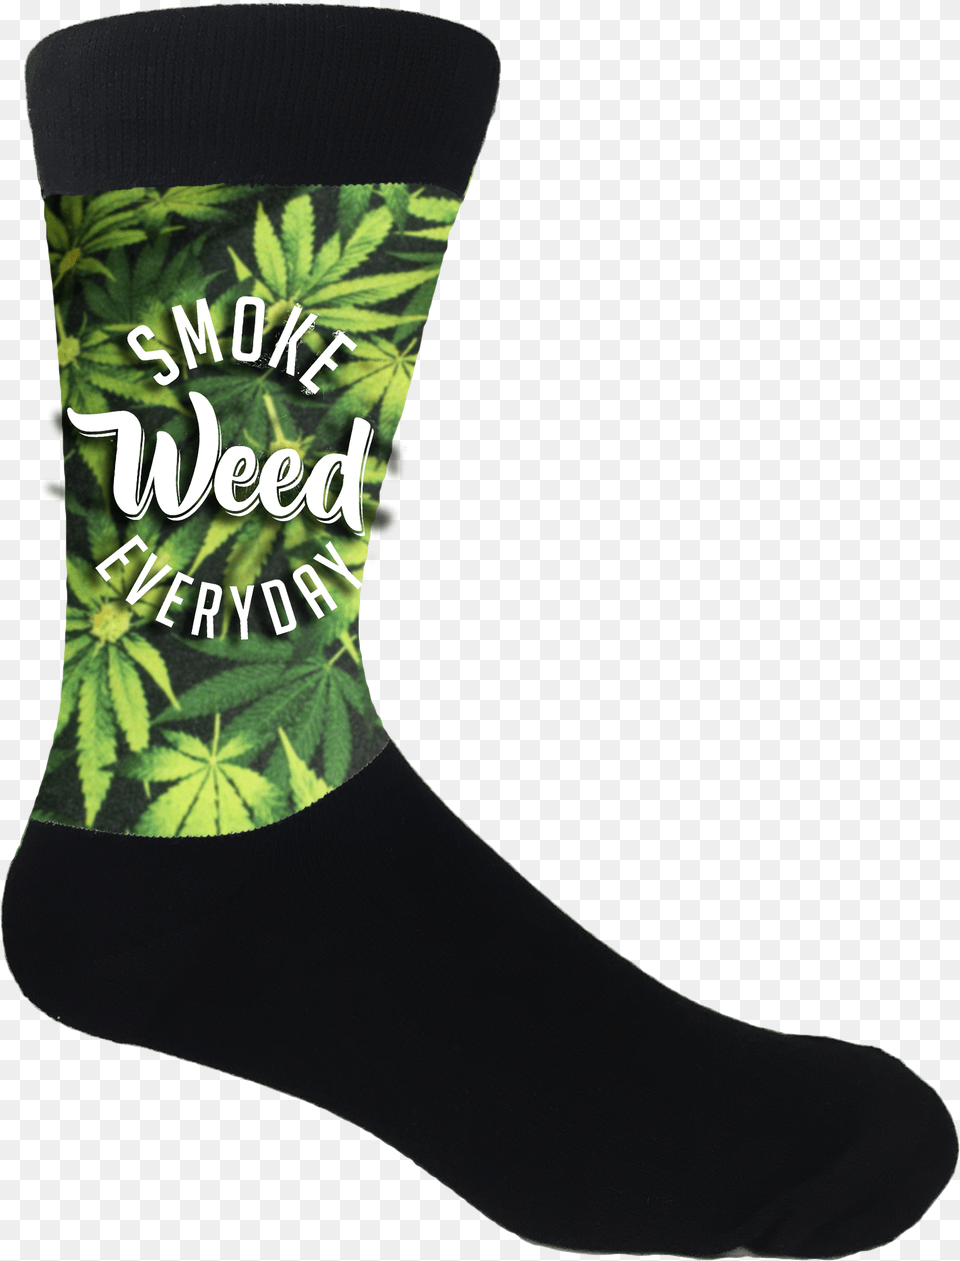 Weed Smoke Socks Weed, Clothing, Hosiery, Sock, Footwear Free Transparent Png